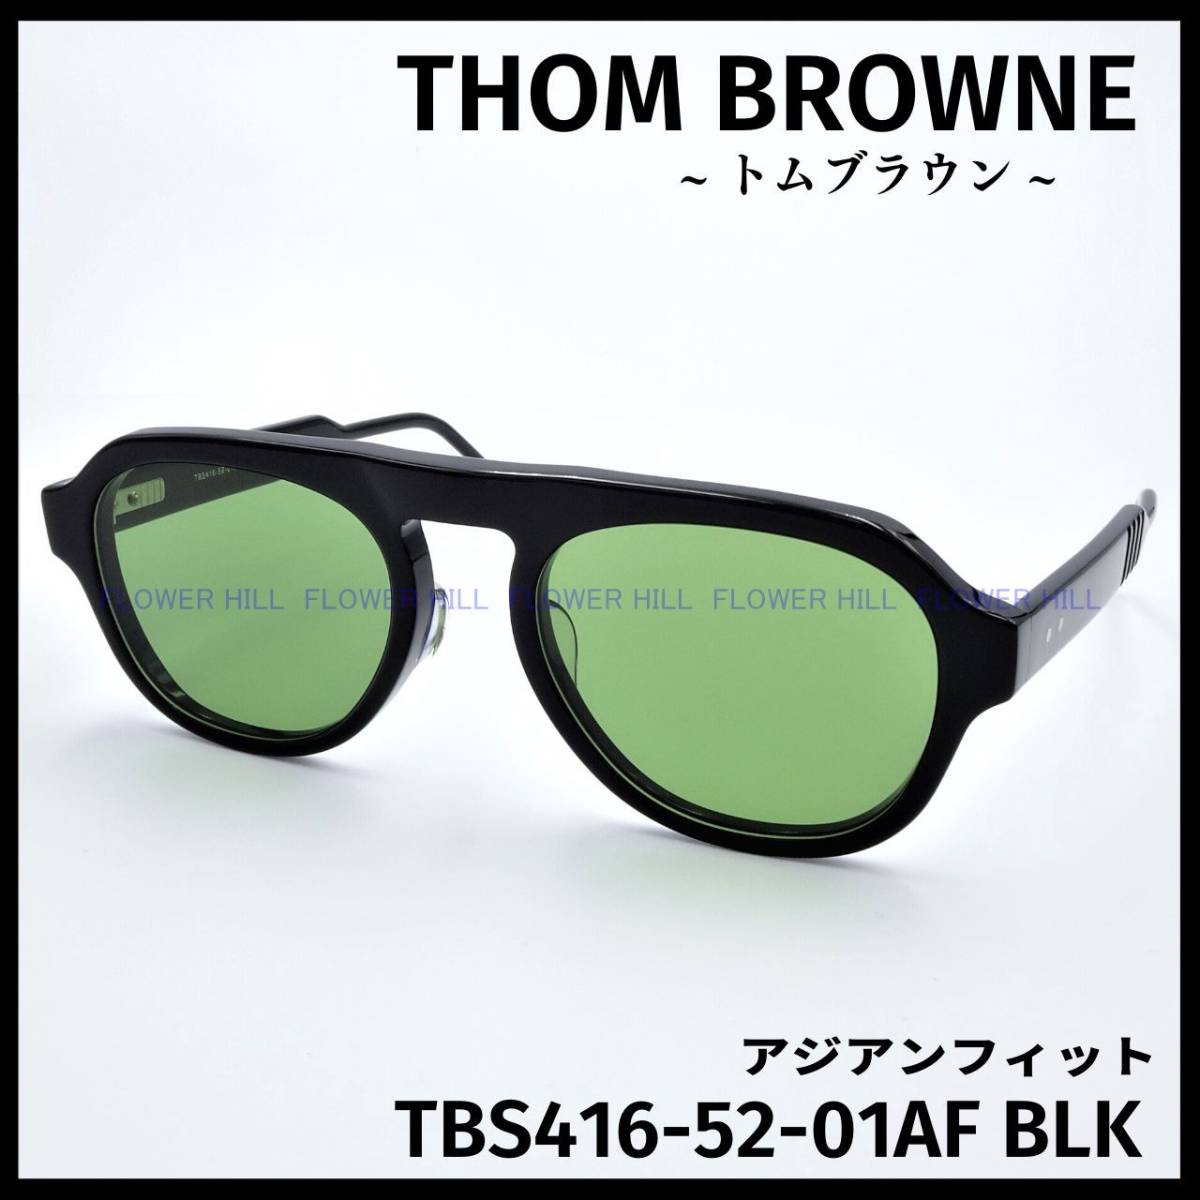 トムブラウン THOM BROWNE サングラス BS416-52-01AF BLK ブラック 日本製 メンズ レディース 新品・送料無料